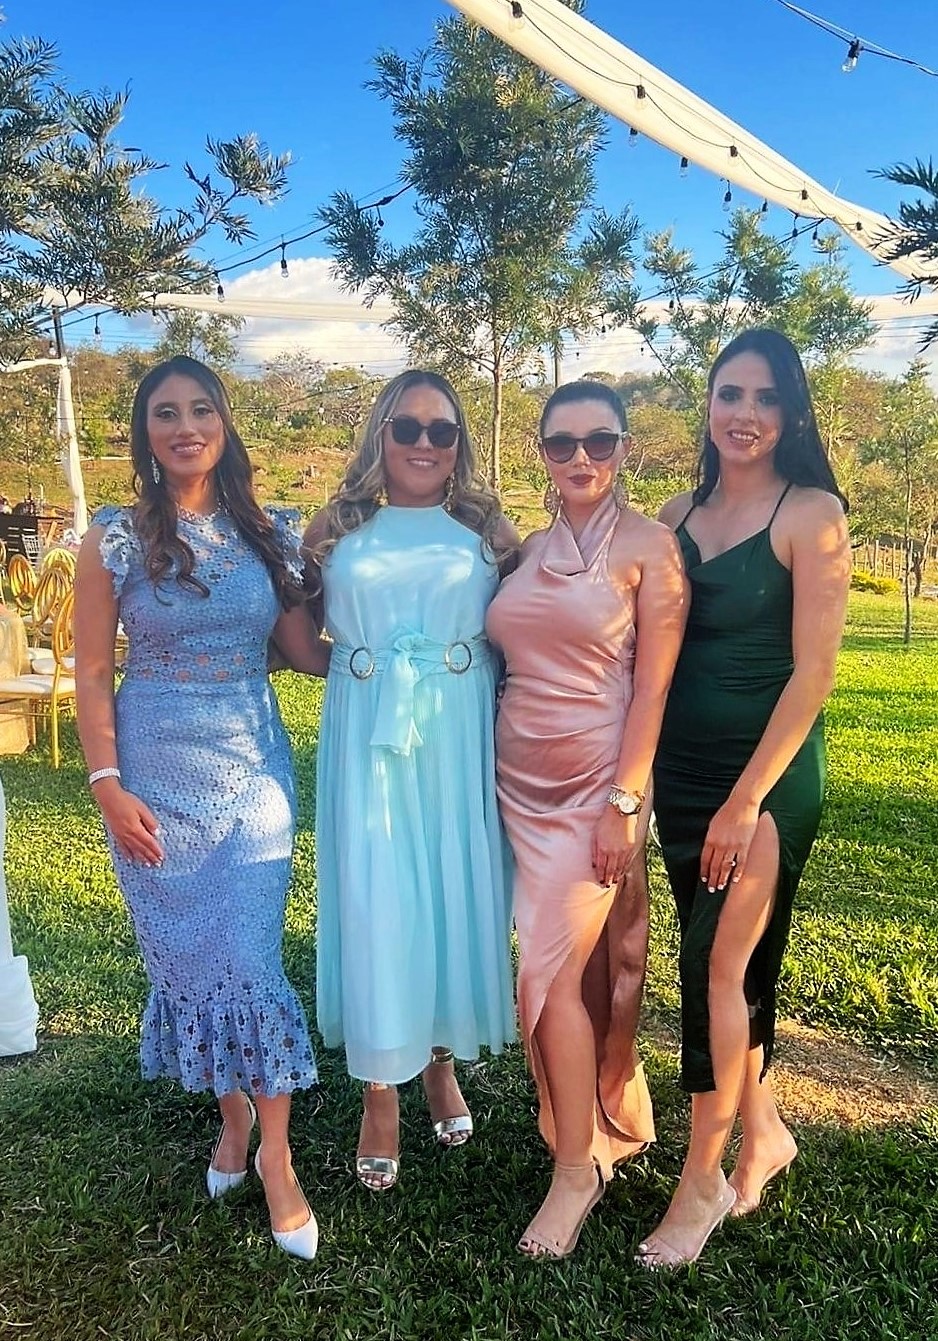 Elegante boda civil de Rosa Méndez y Jesús Chinchilla